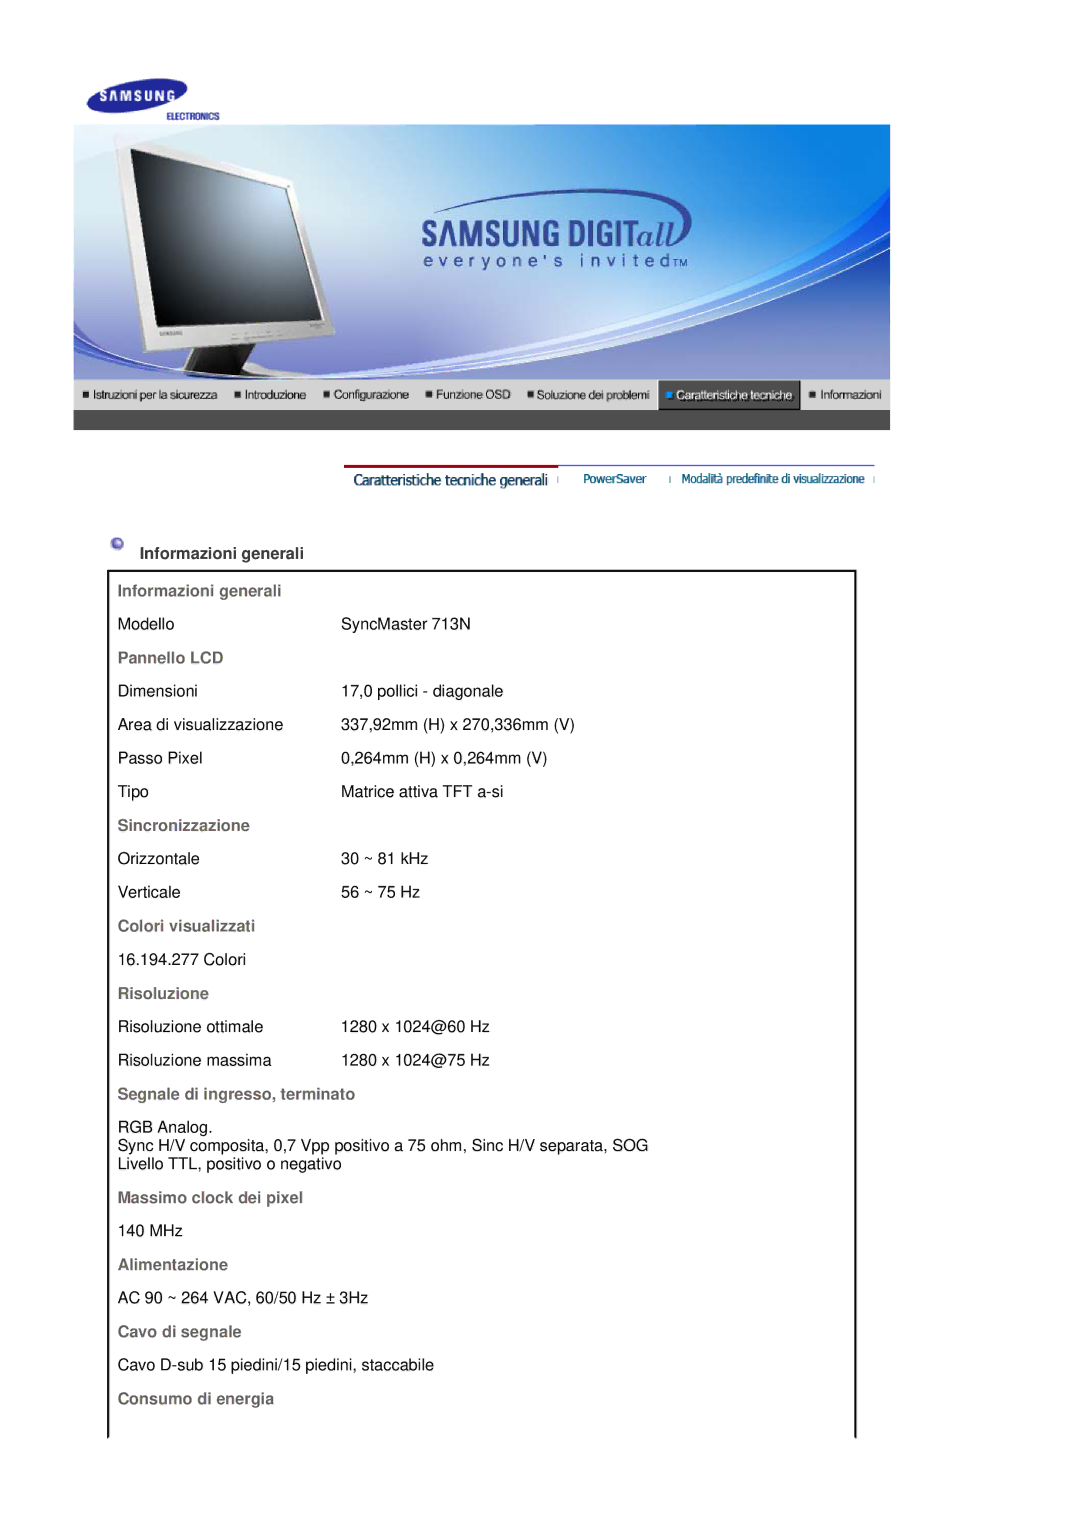 Samsung MJ17CSKS/EDC manual Informazioni generali, Pannello LCD, Sincronizzazione, Colori visualizzati, Risoluzione 